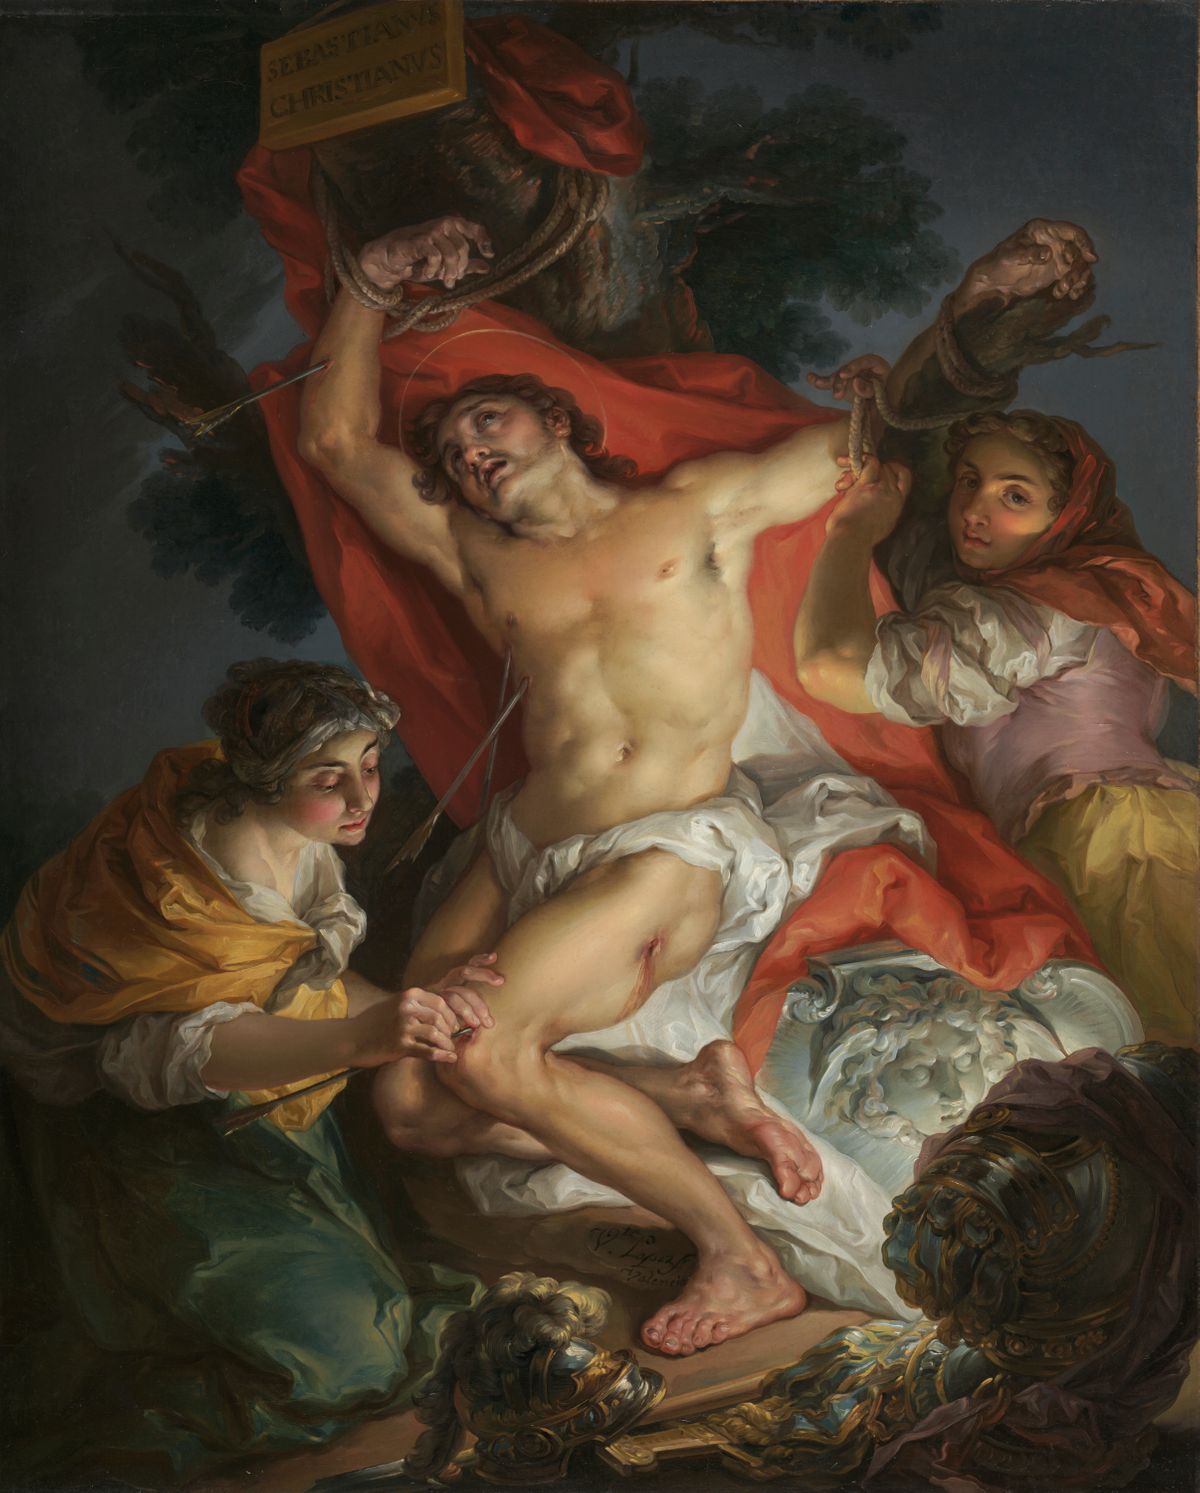 Saint Sebastian Tended by Saint Irene by Vicente López y Portaña (1795) - Public Domain Catholic Painting